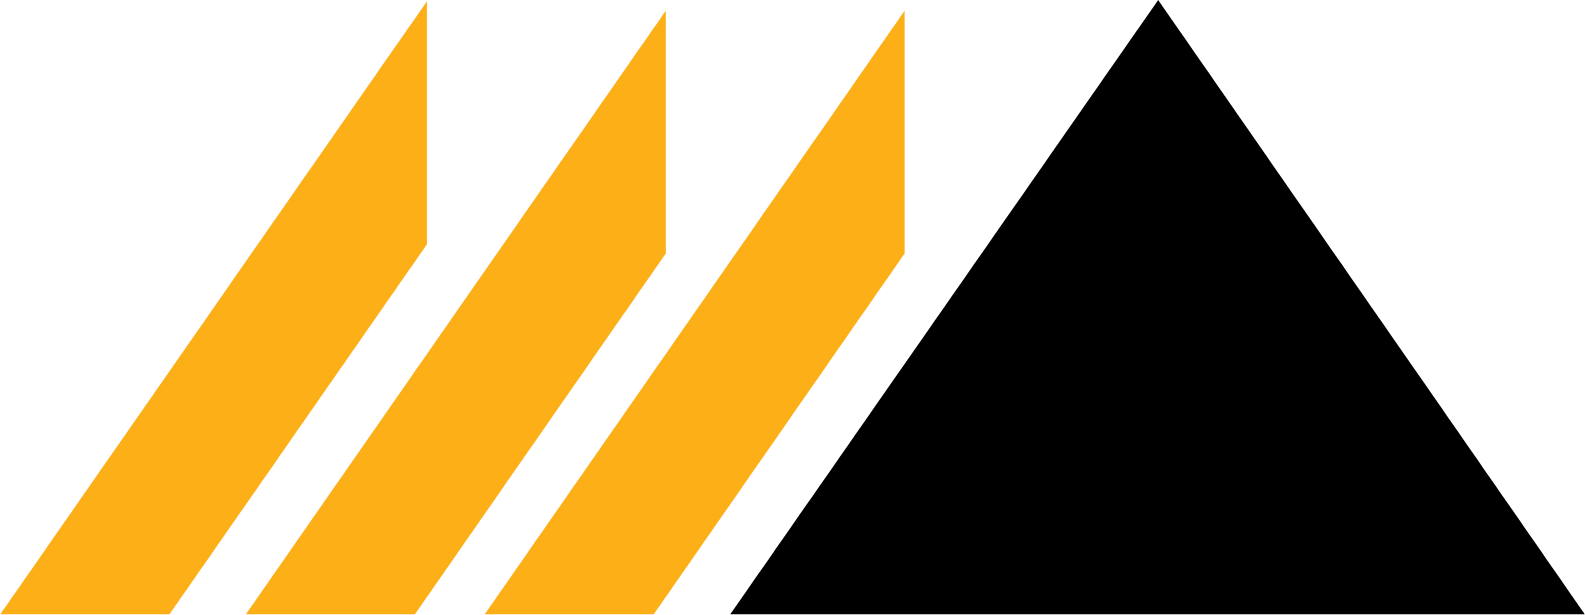 DRDGOLD logo (PNG transparent)